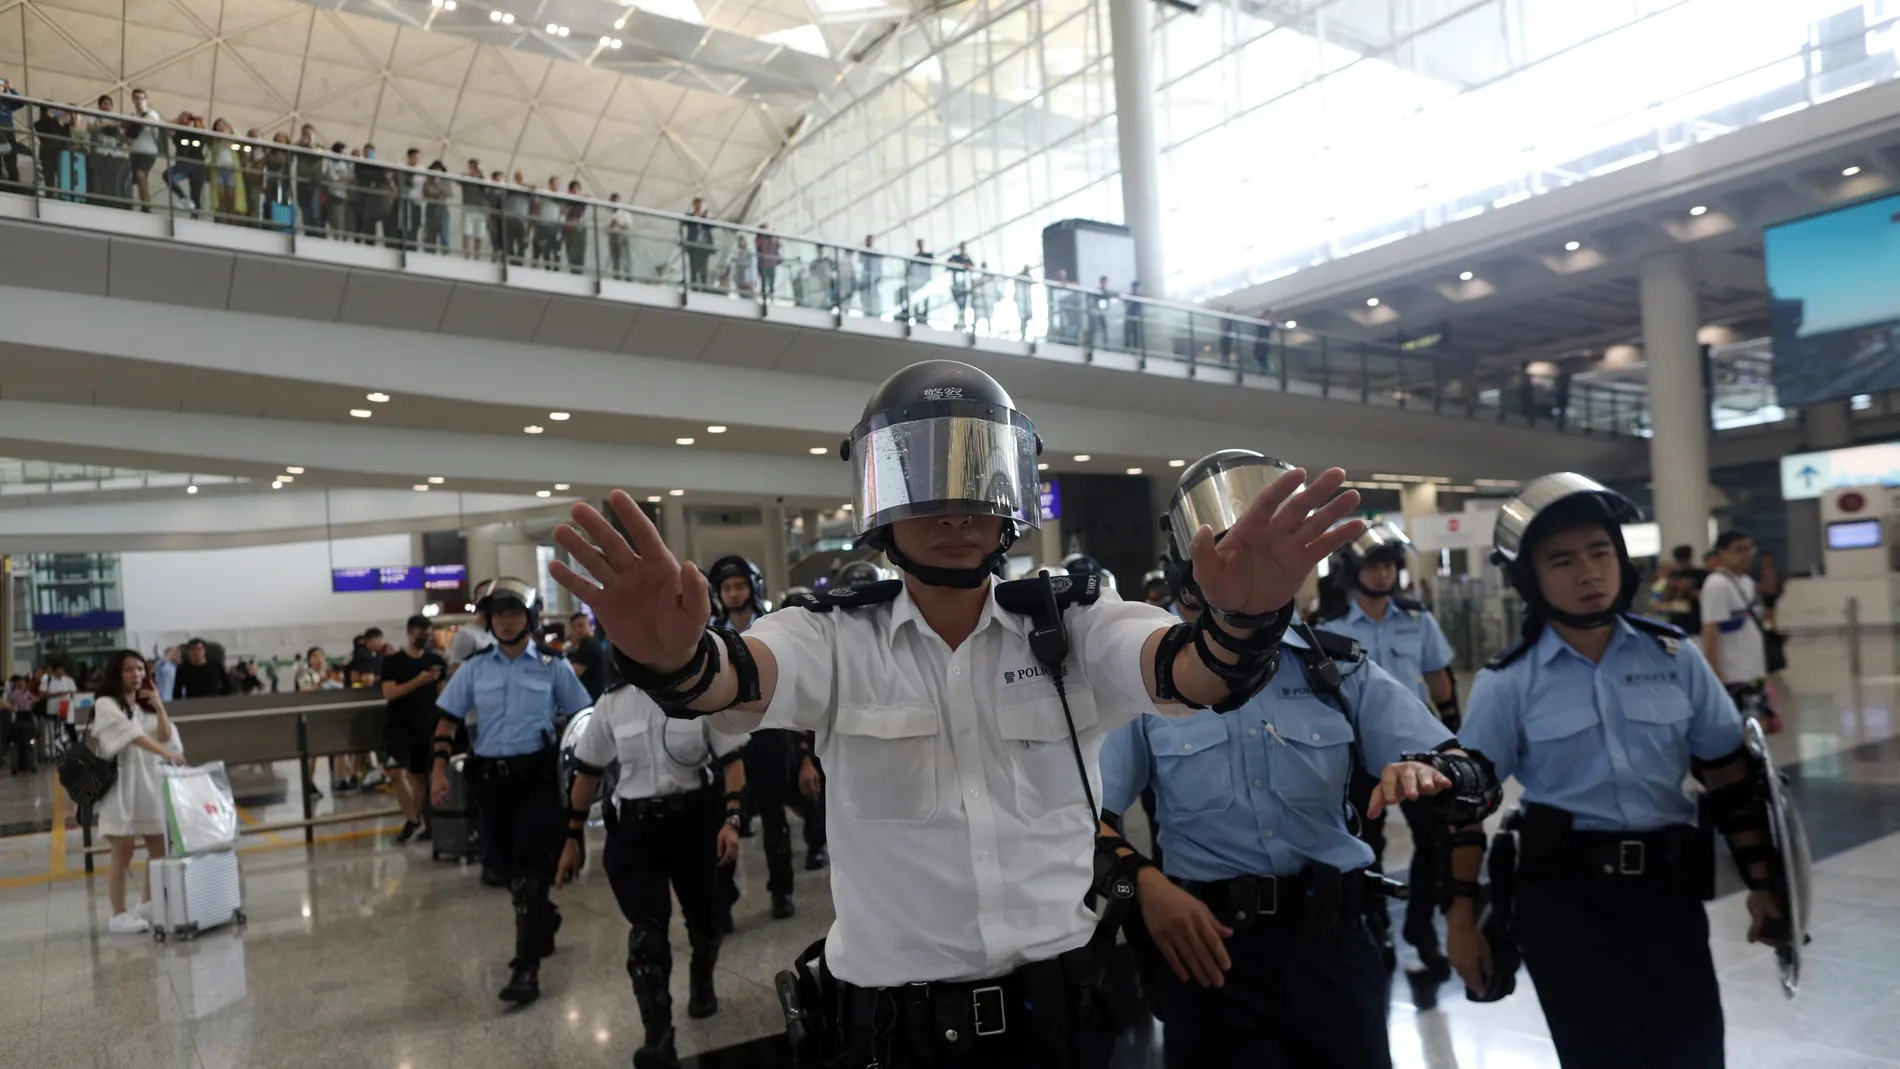 Suspendida la línea de metro del aeropuerto de Hong Kong por las protestas